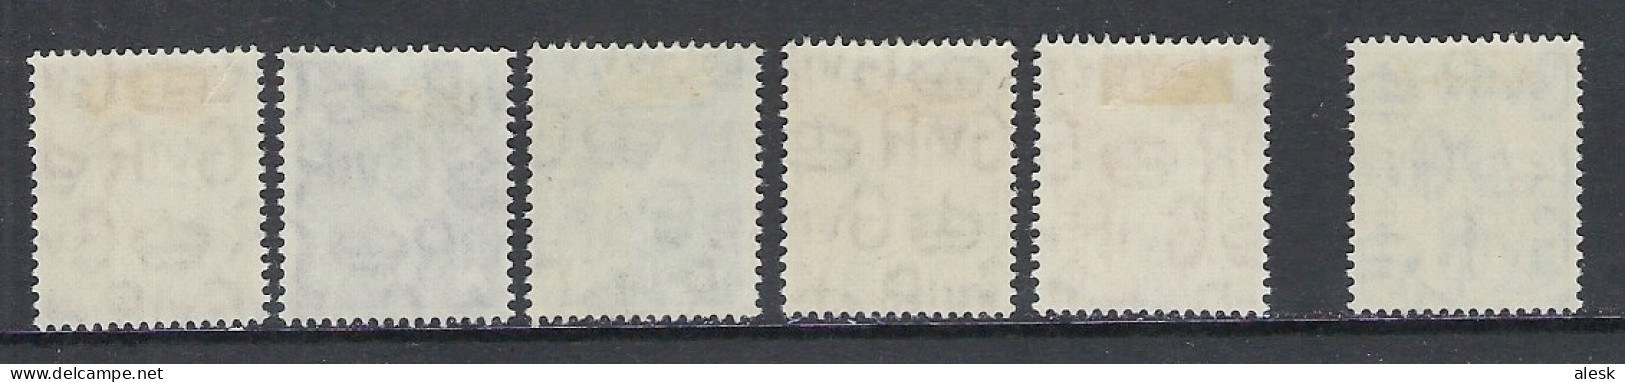 GRANDE-BRETAGNE 1951 - Série N°241 à 255 + 250 (y&t) Avec Charnière - Ongebruikt